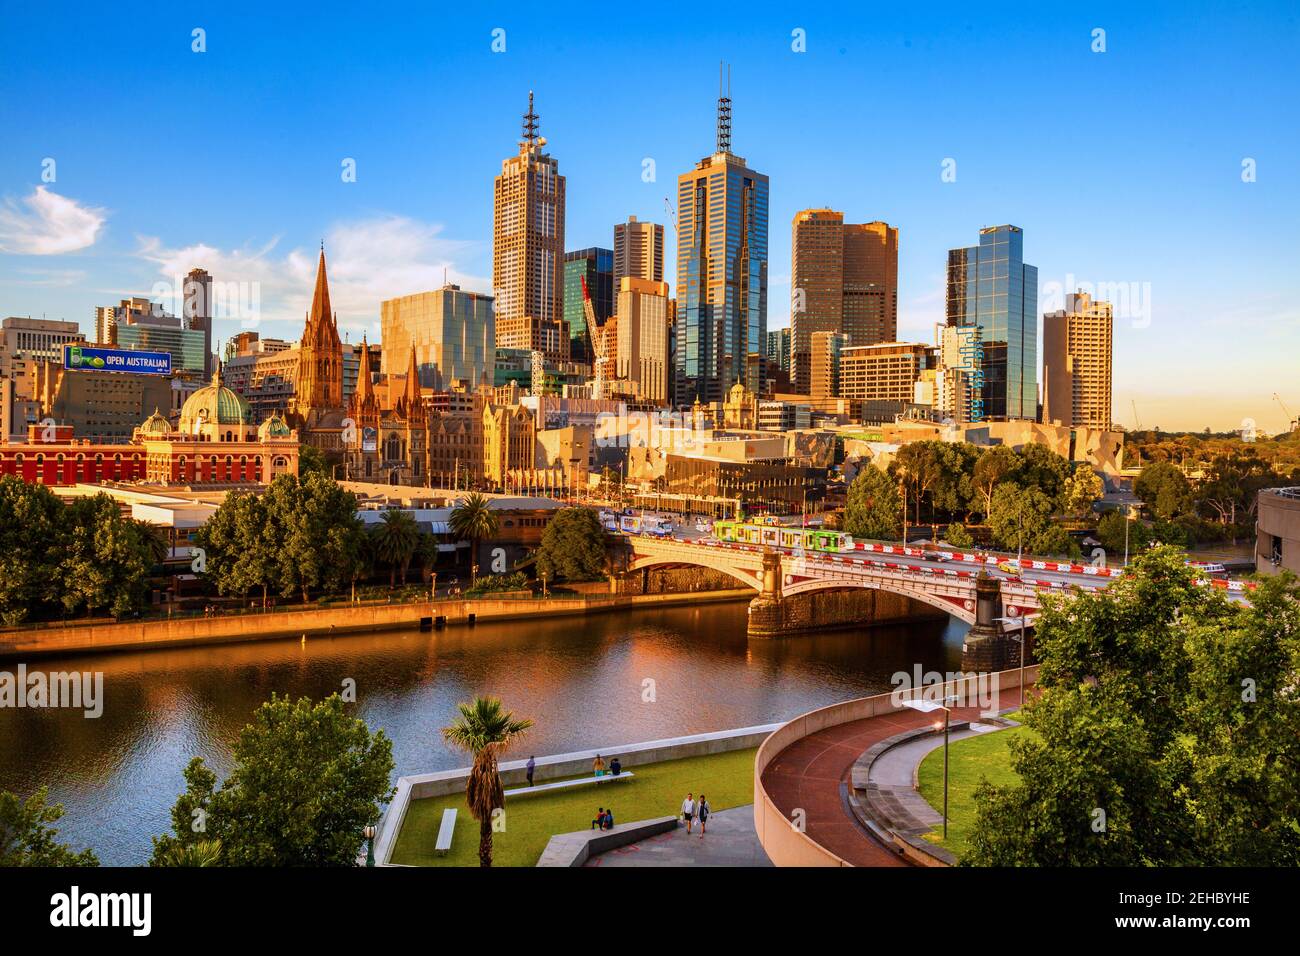 Melbourne, Australie skyline at night : à la recherche de l'autre côté de la rivière Yarra de Princes Bridge et place de la Fédération. Banque D'Images